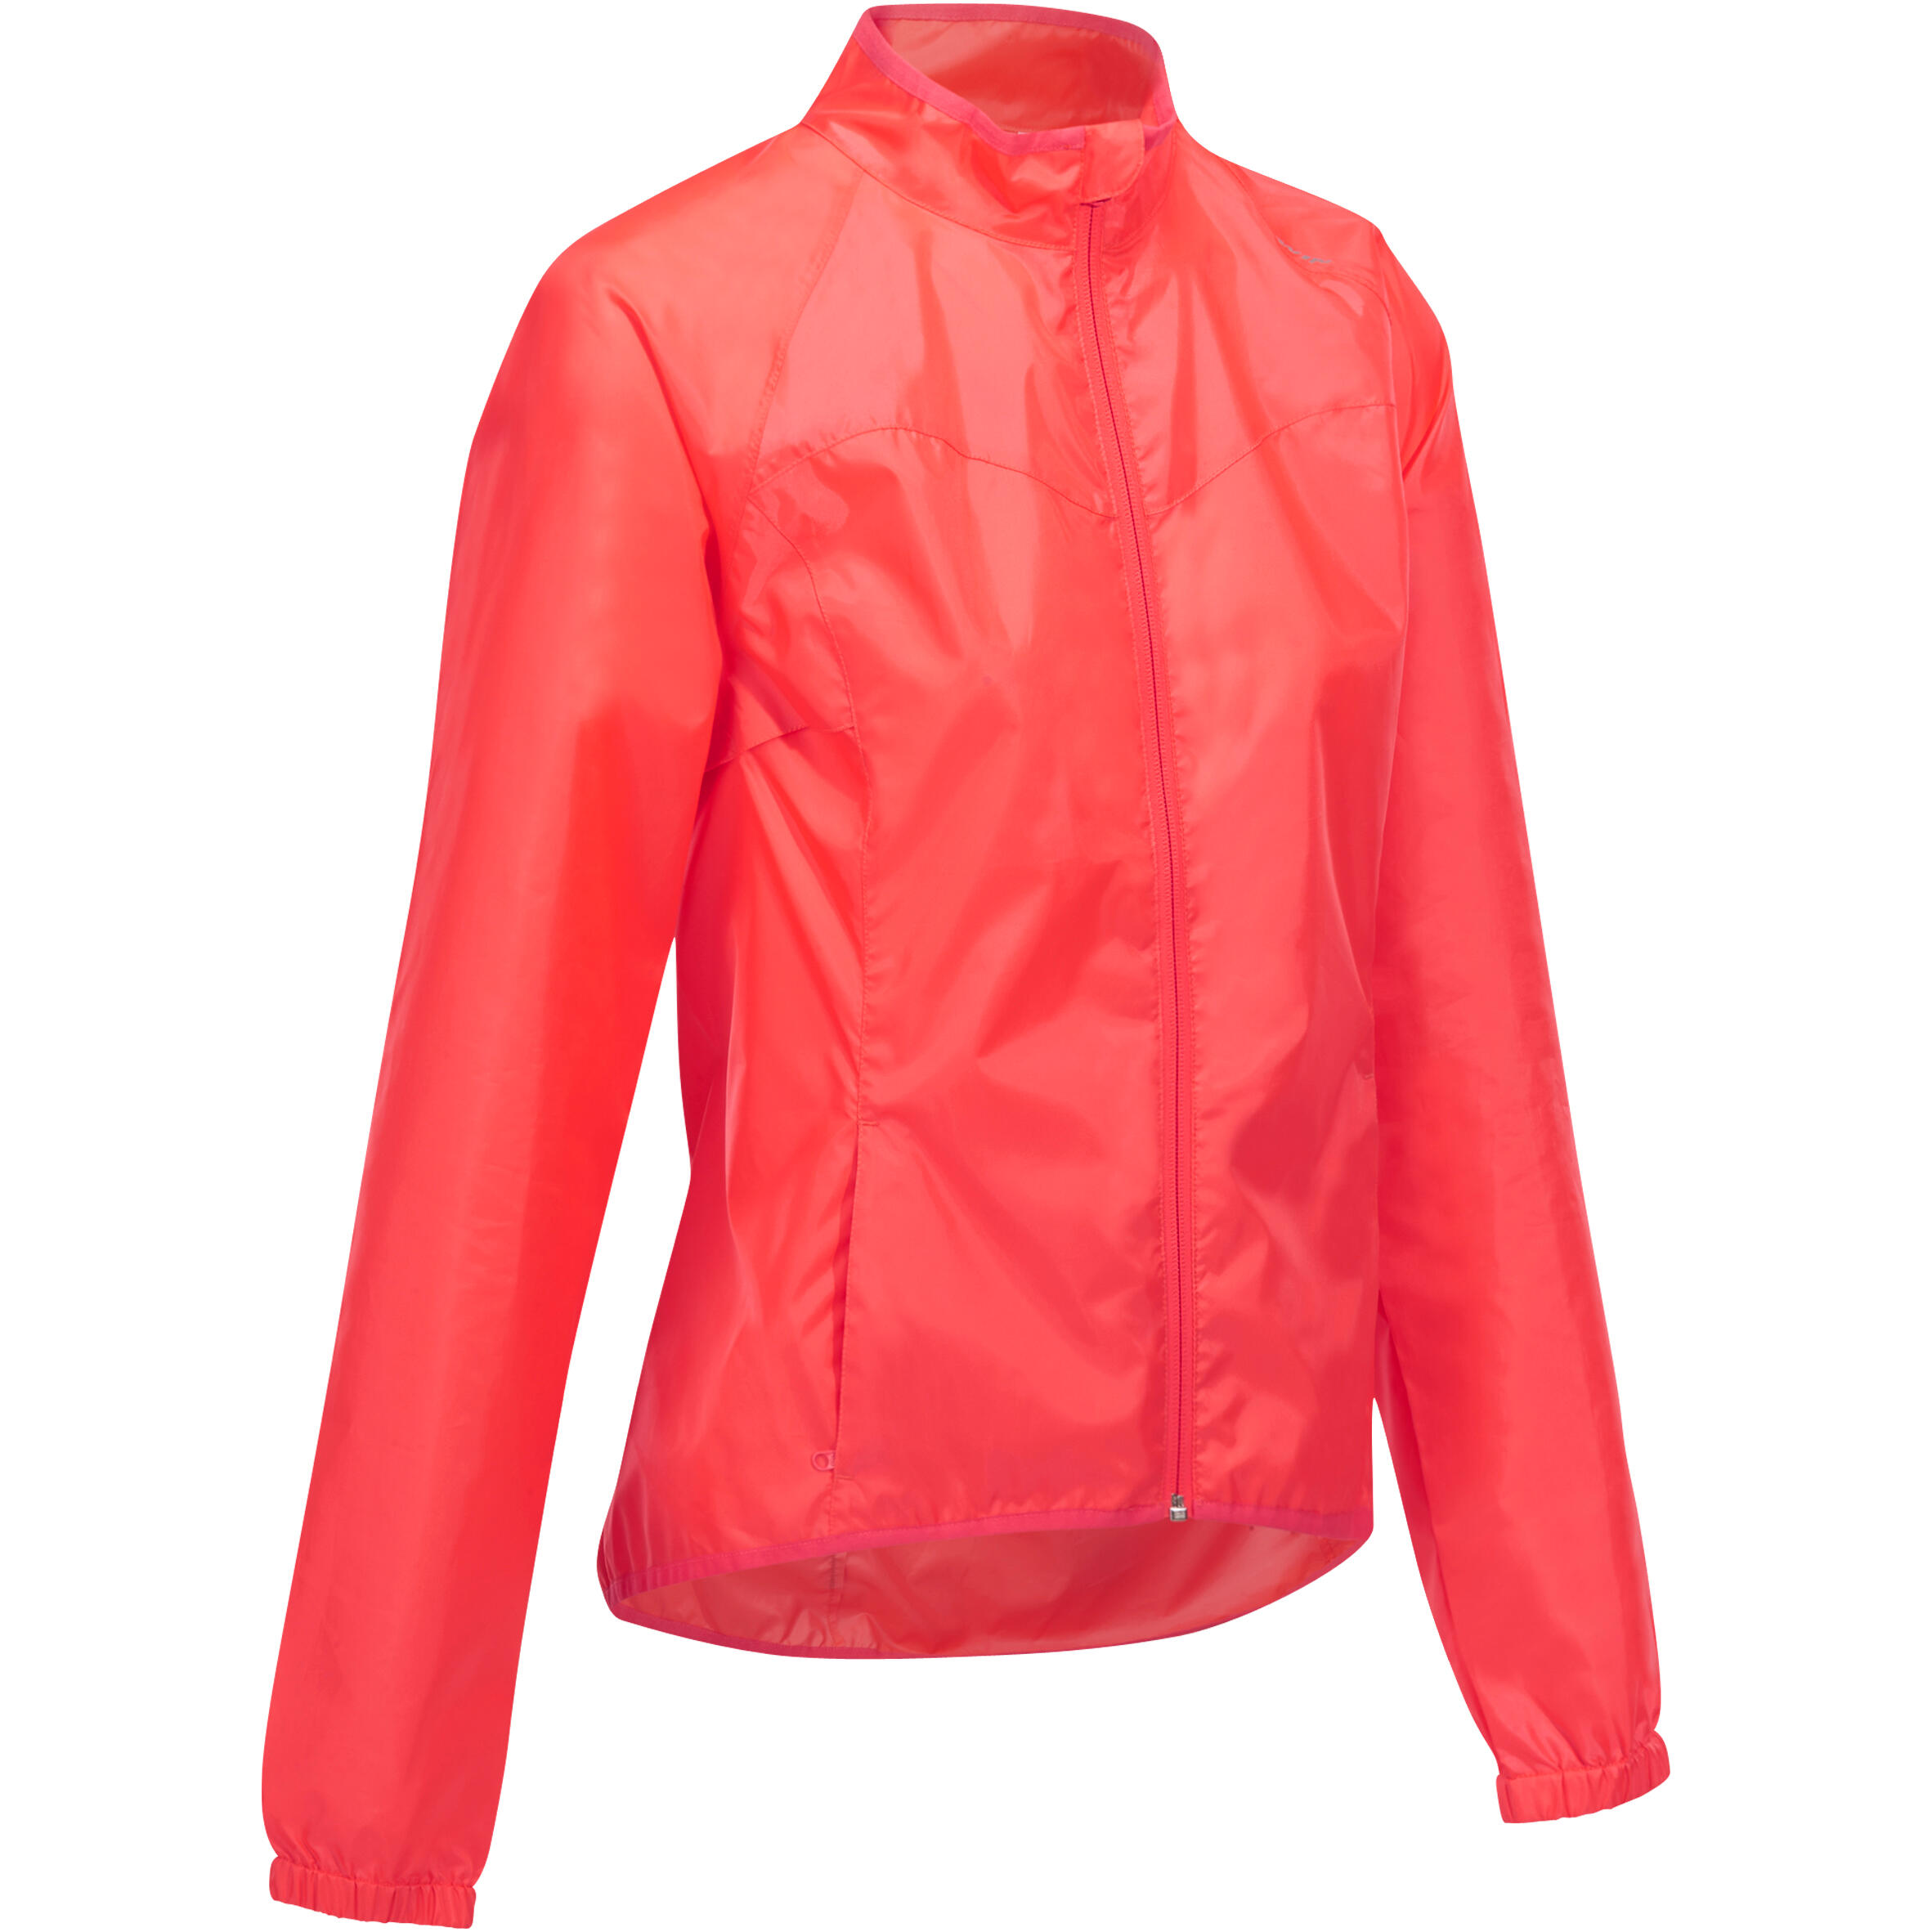 Jachetă Protecţie Ploaie 100 Roz Fluorescent Damă La Oferta Online decathlon imagine La Oferta Online